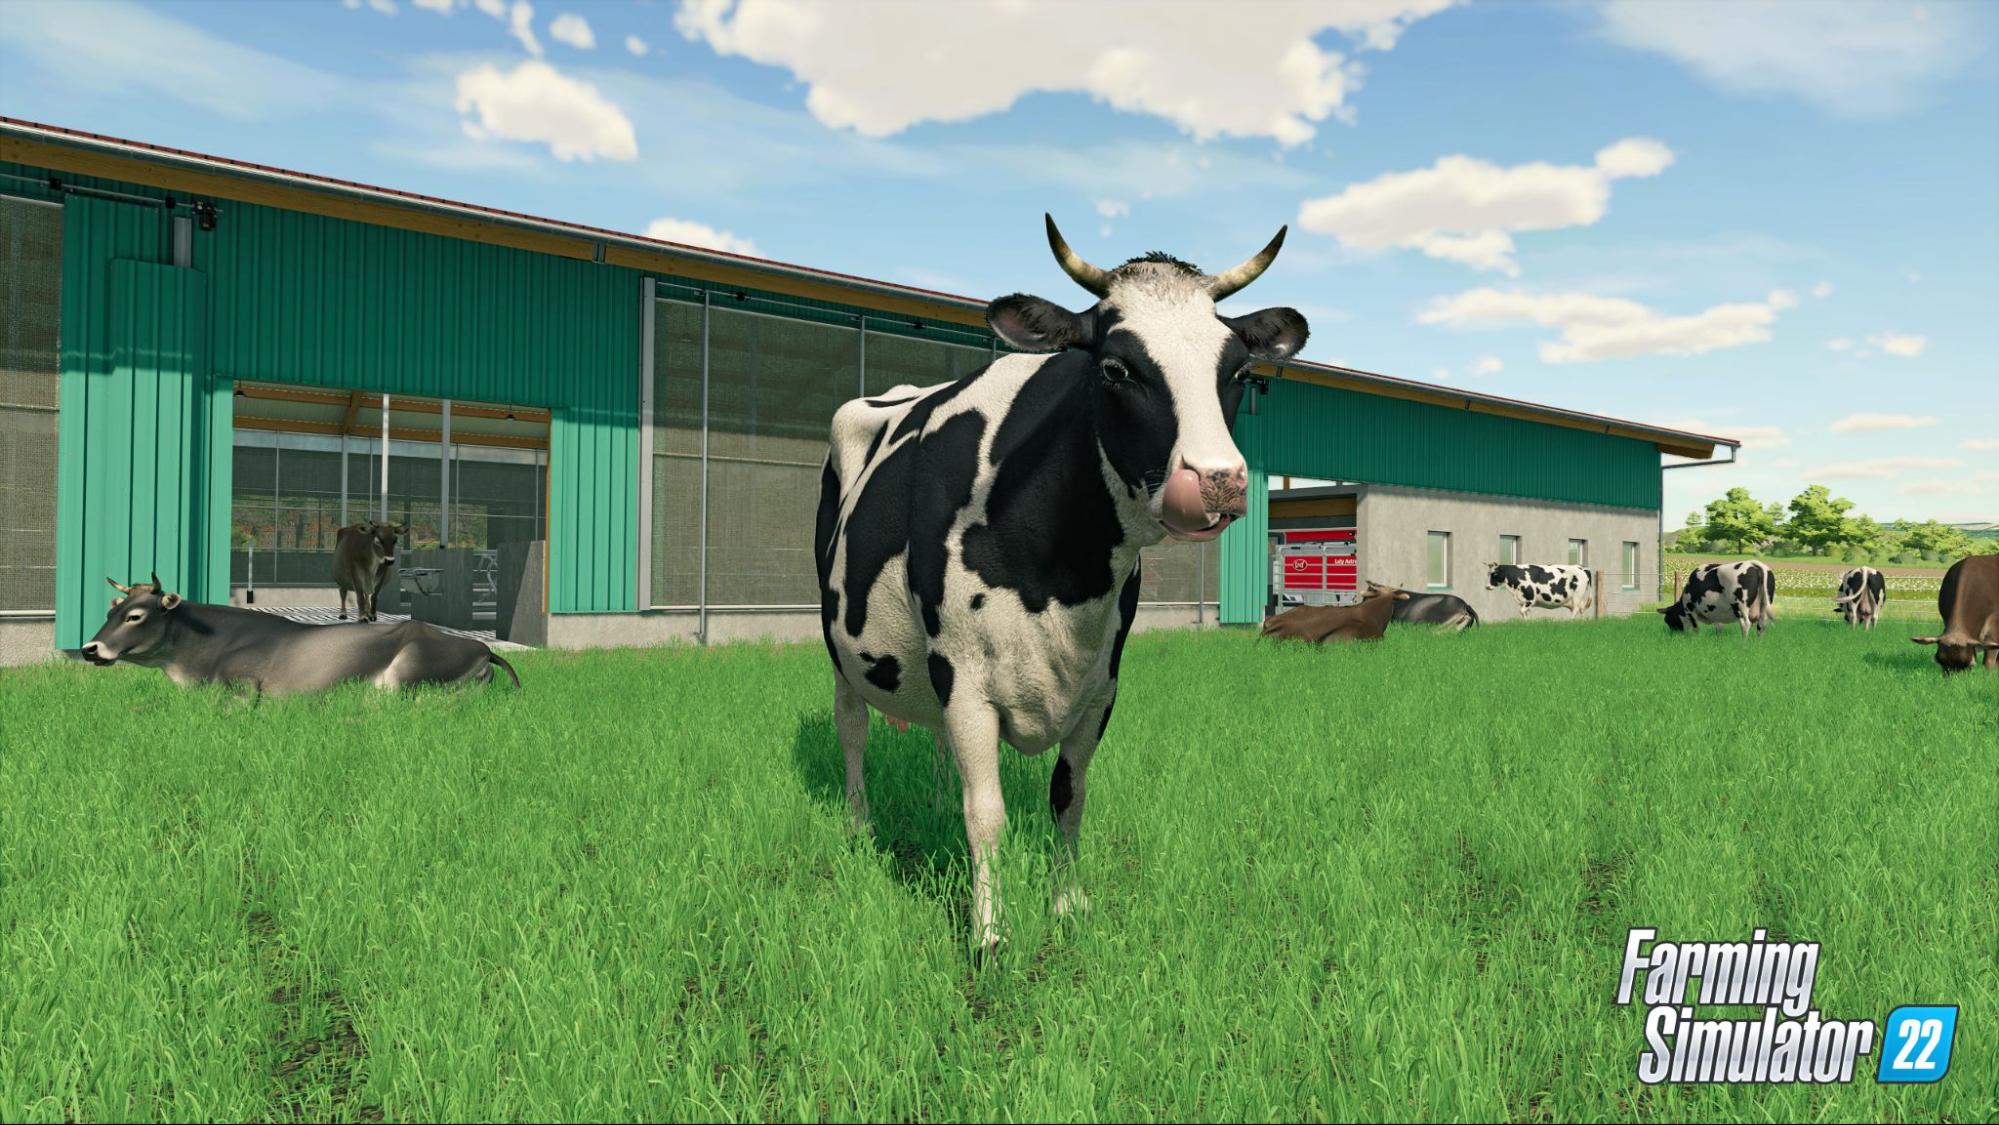 リアルな農業シミュレーション『Farming Simulator 22』が今秋に発売決定。季節のサイクルが導入され、100以上の現実の農業ブランドから400以上のアイテムが登場_001